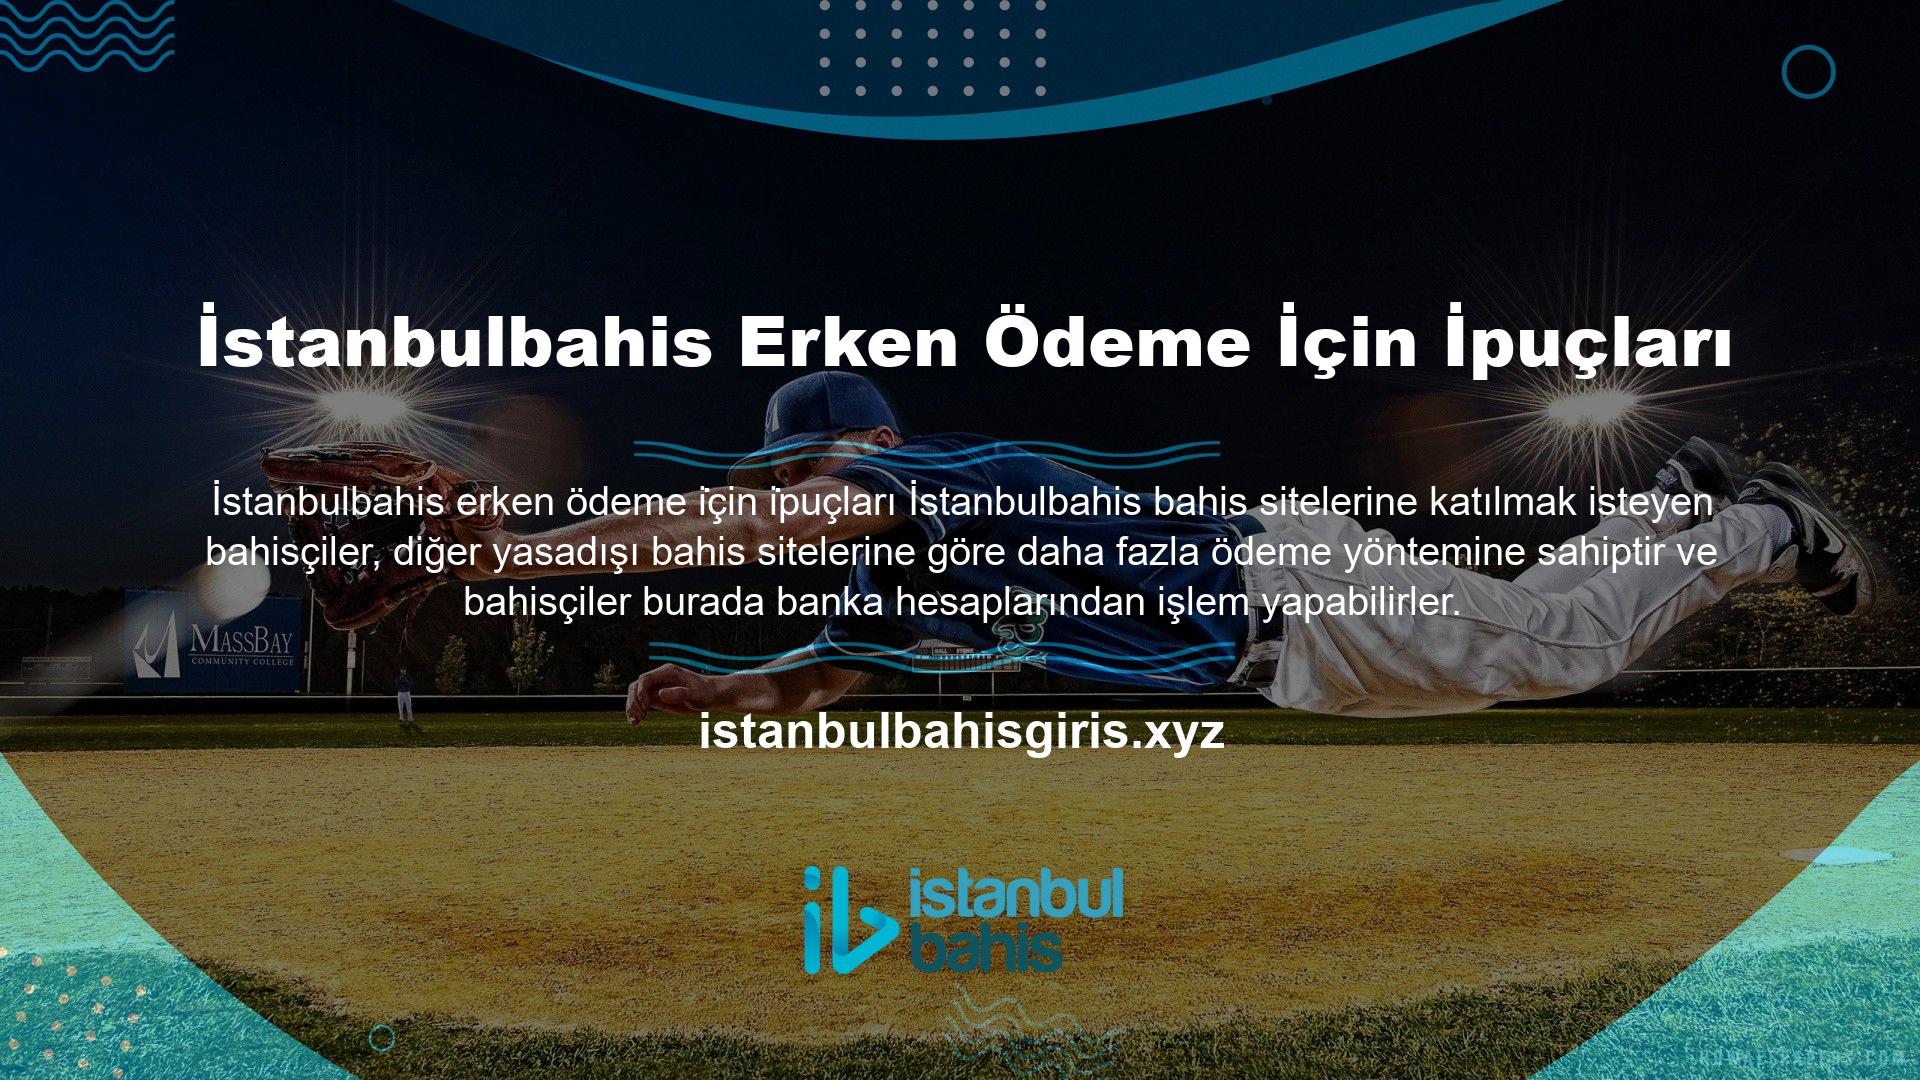 Daha fazla özelliği ile İstanbulbahis bahis sitesi, bahisçilerin herhangi bir bankacılık yöntemi ile ödeme yapmasına olanak tanıyan çok çeşitli ödeme teknolojileri ile donatılmıştır